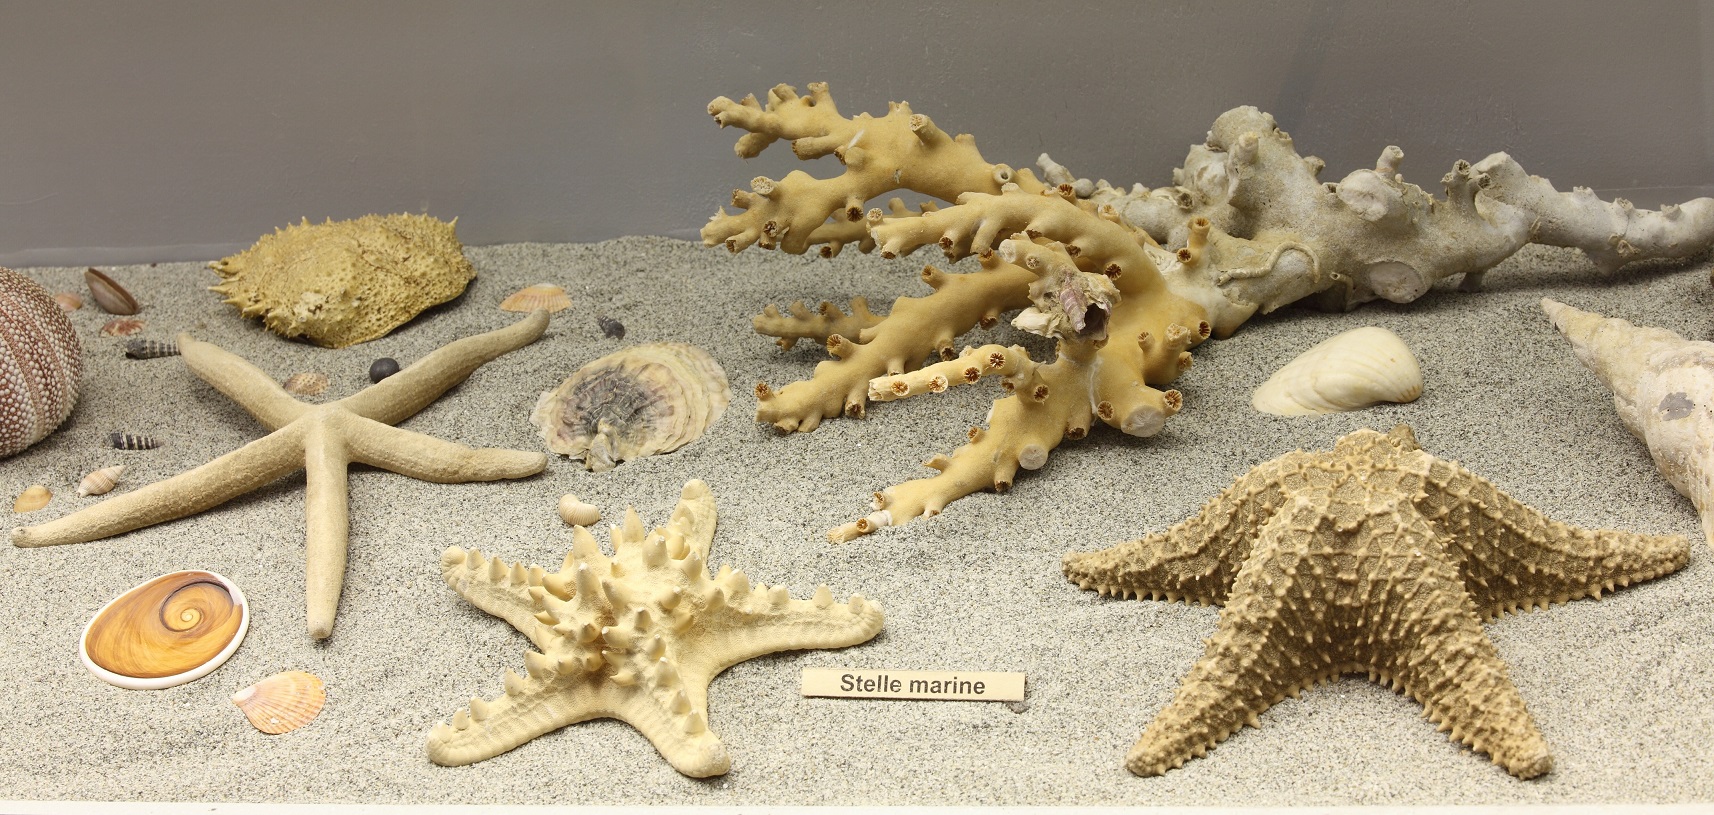 Stelle marine, ricci e coralli.